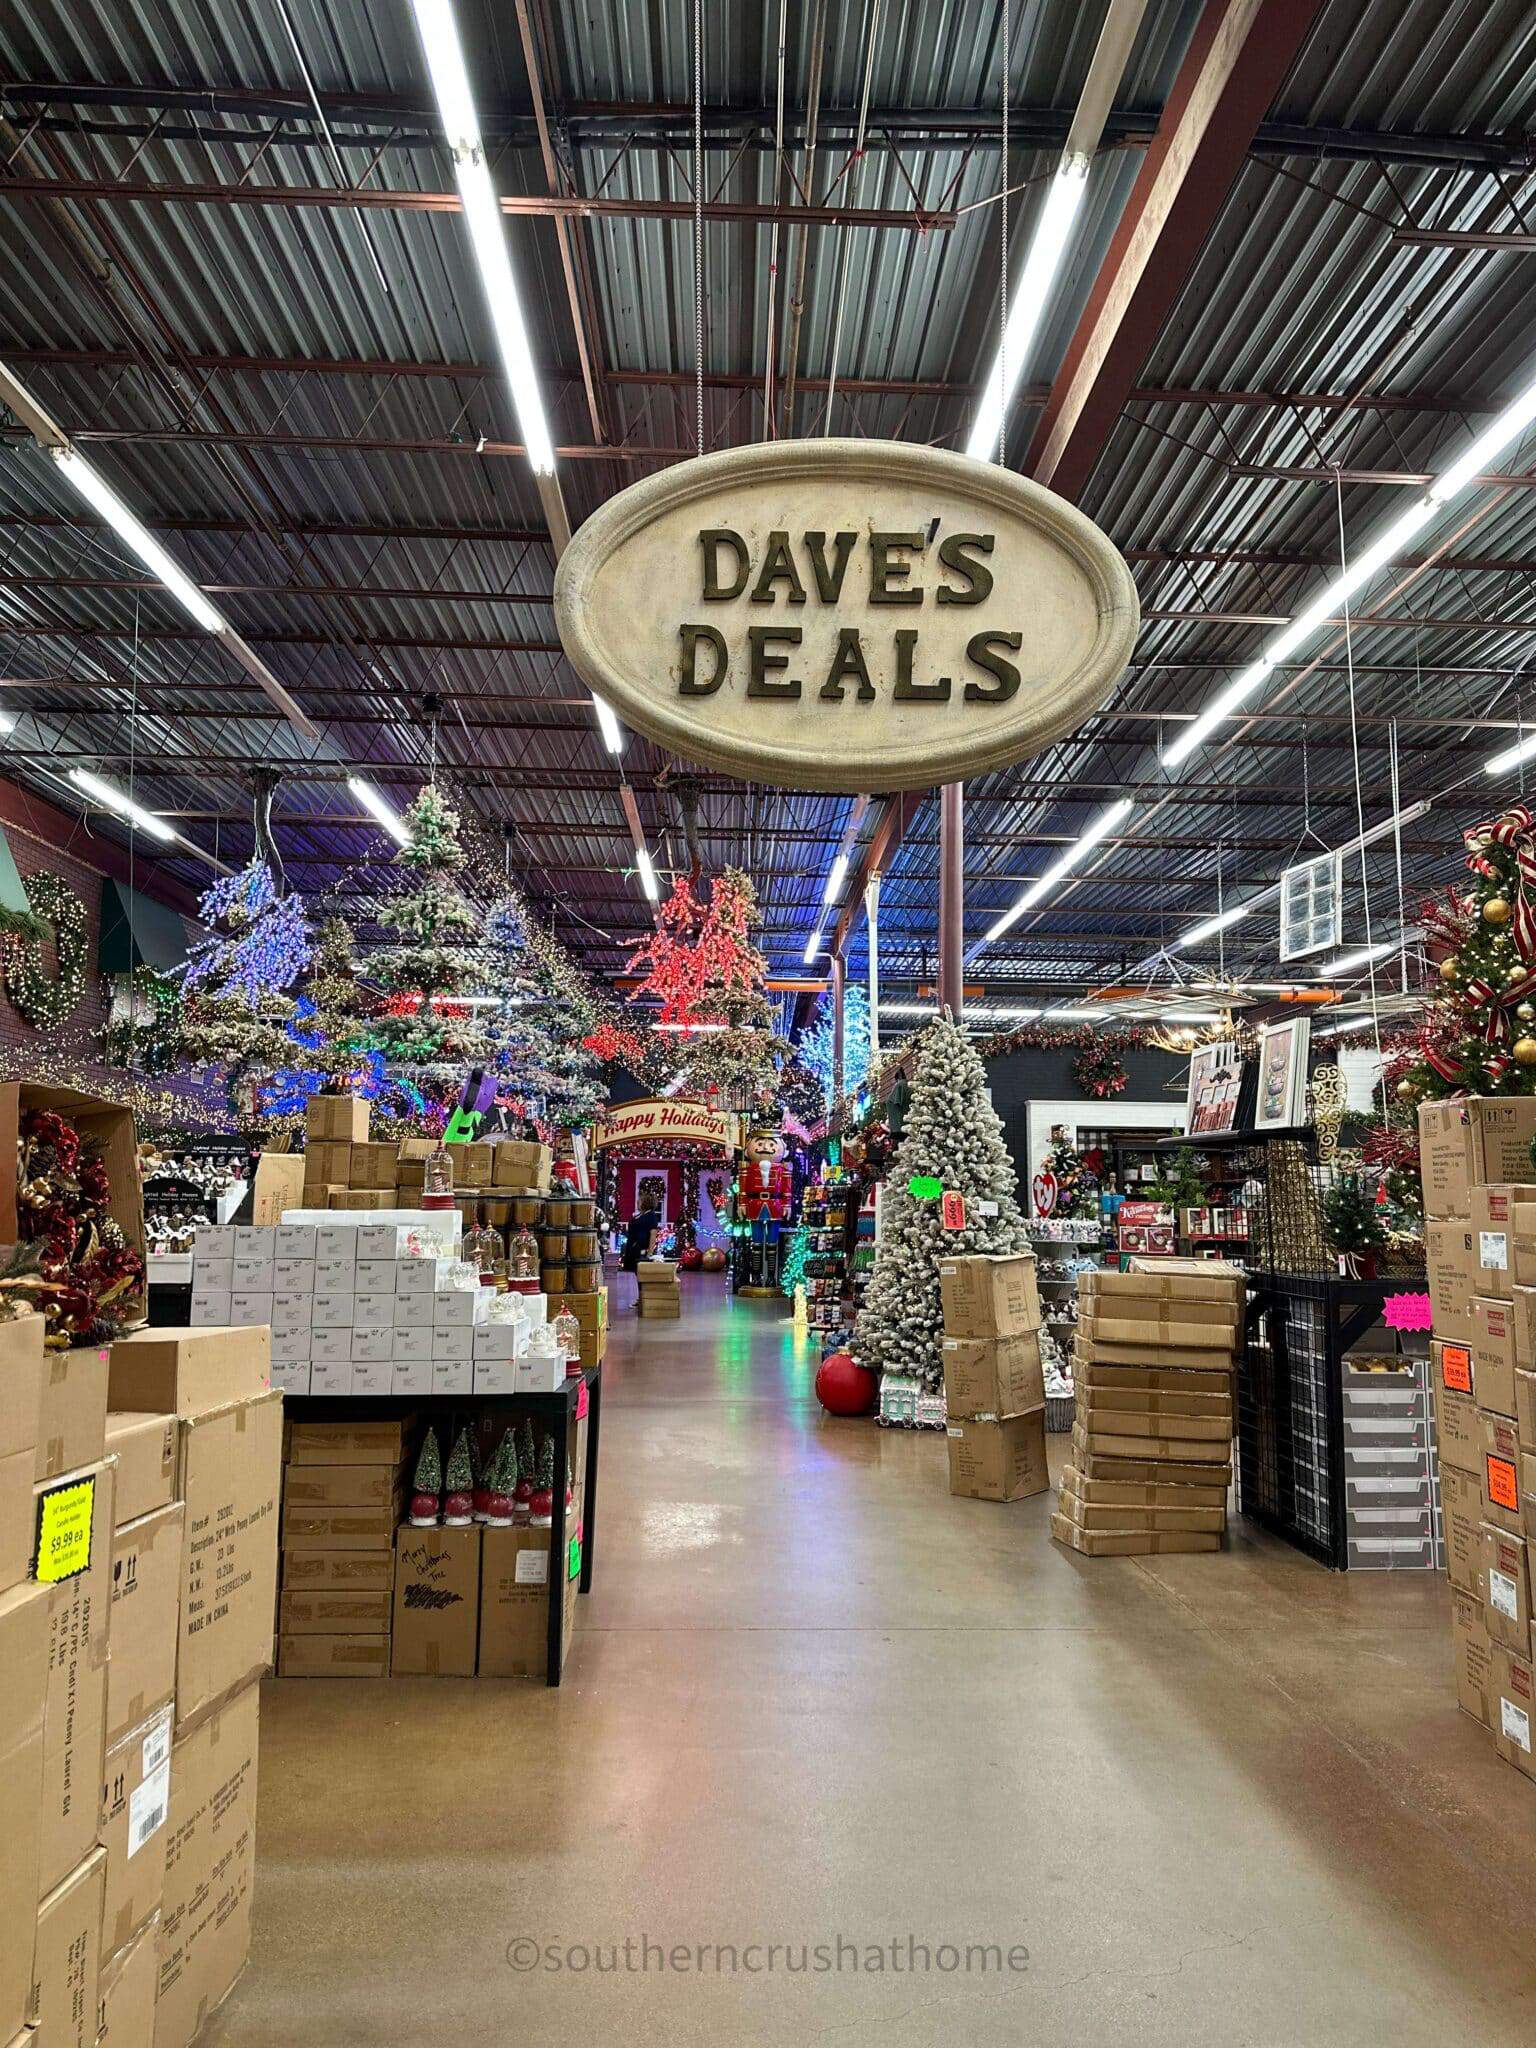 daves deals sign